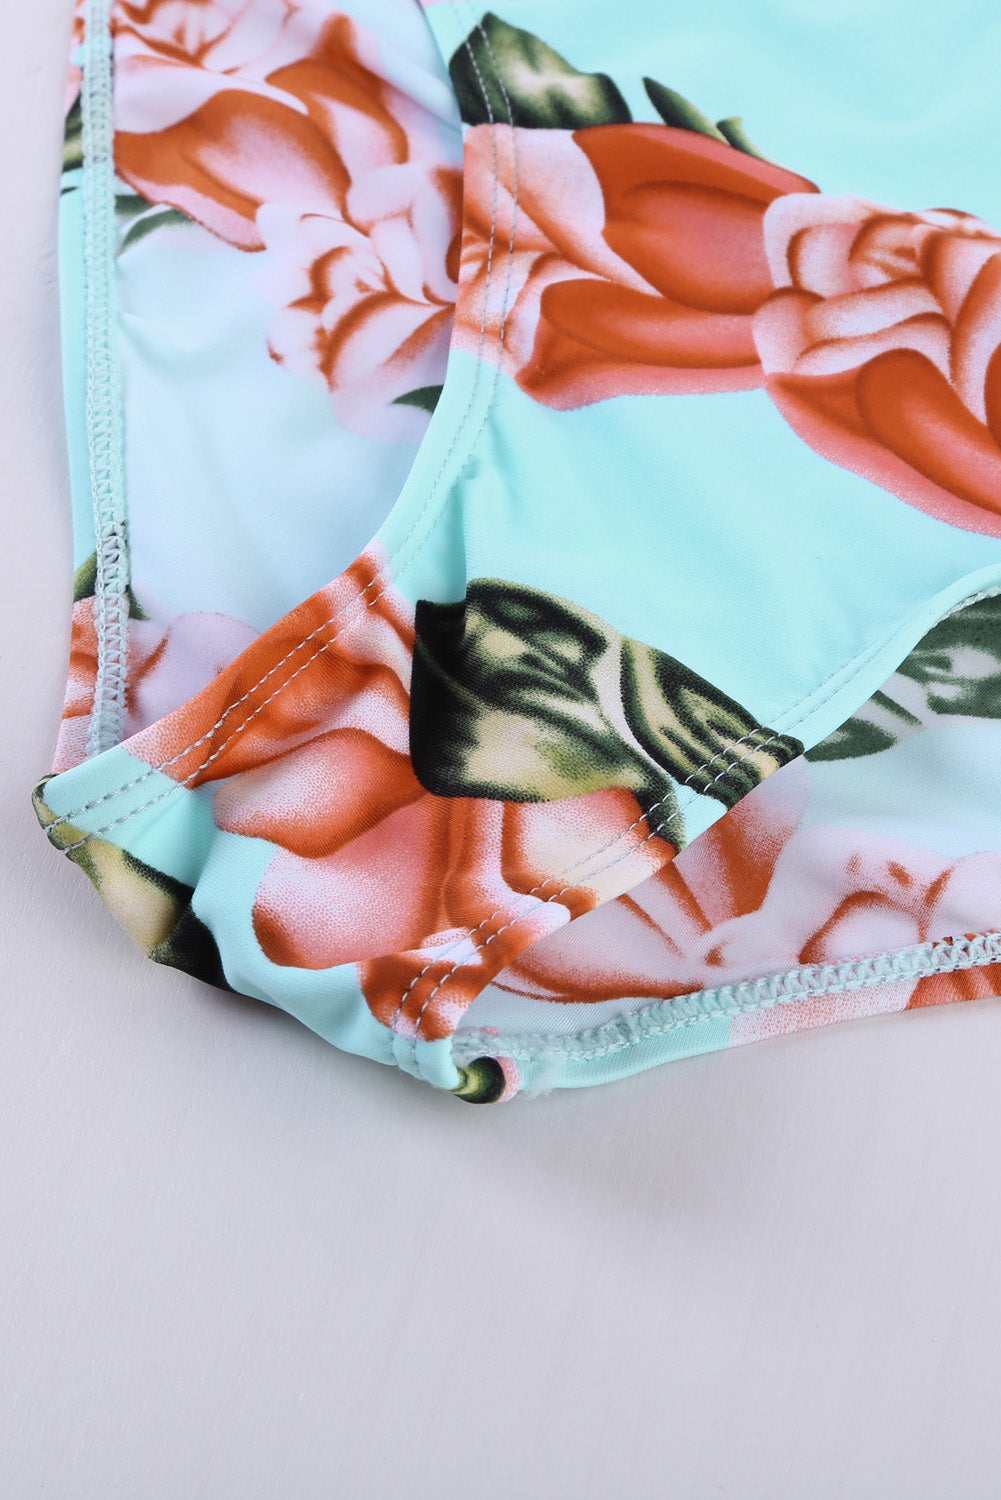 Floral Ruffled Hem High Waist Bikini Set